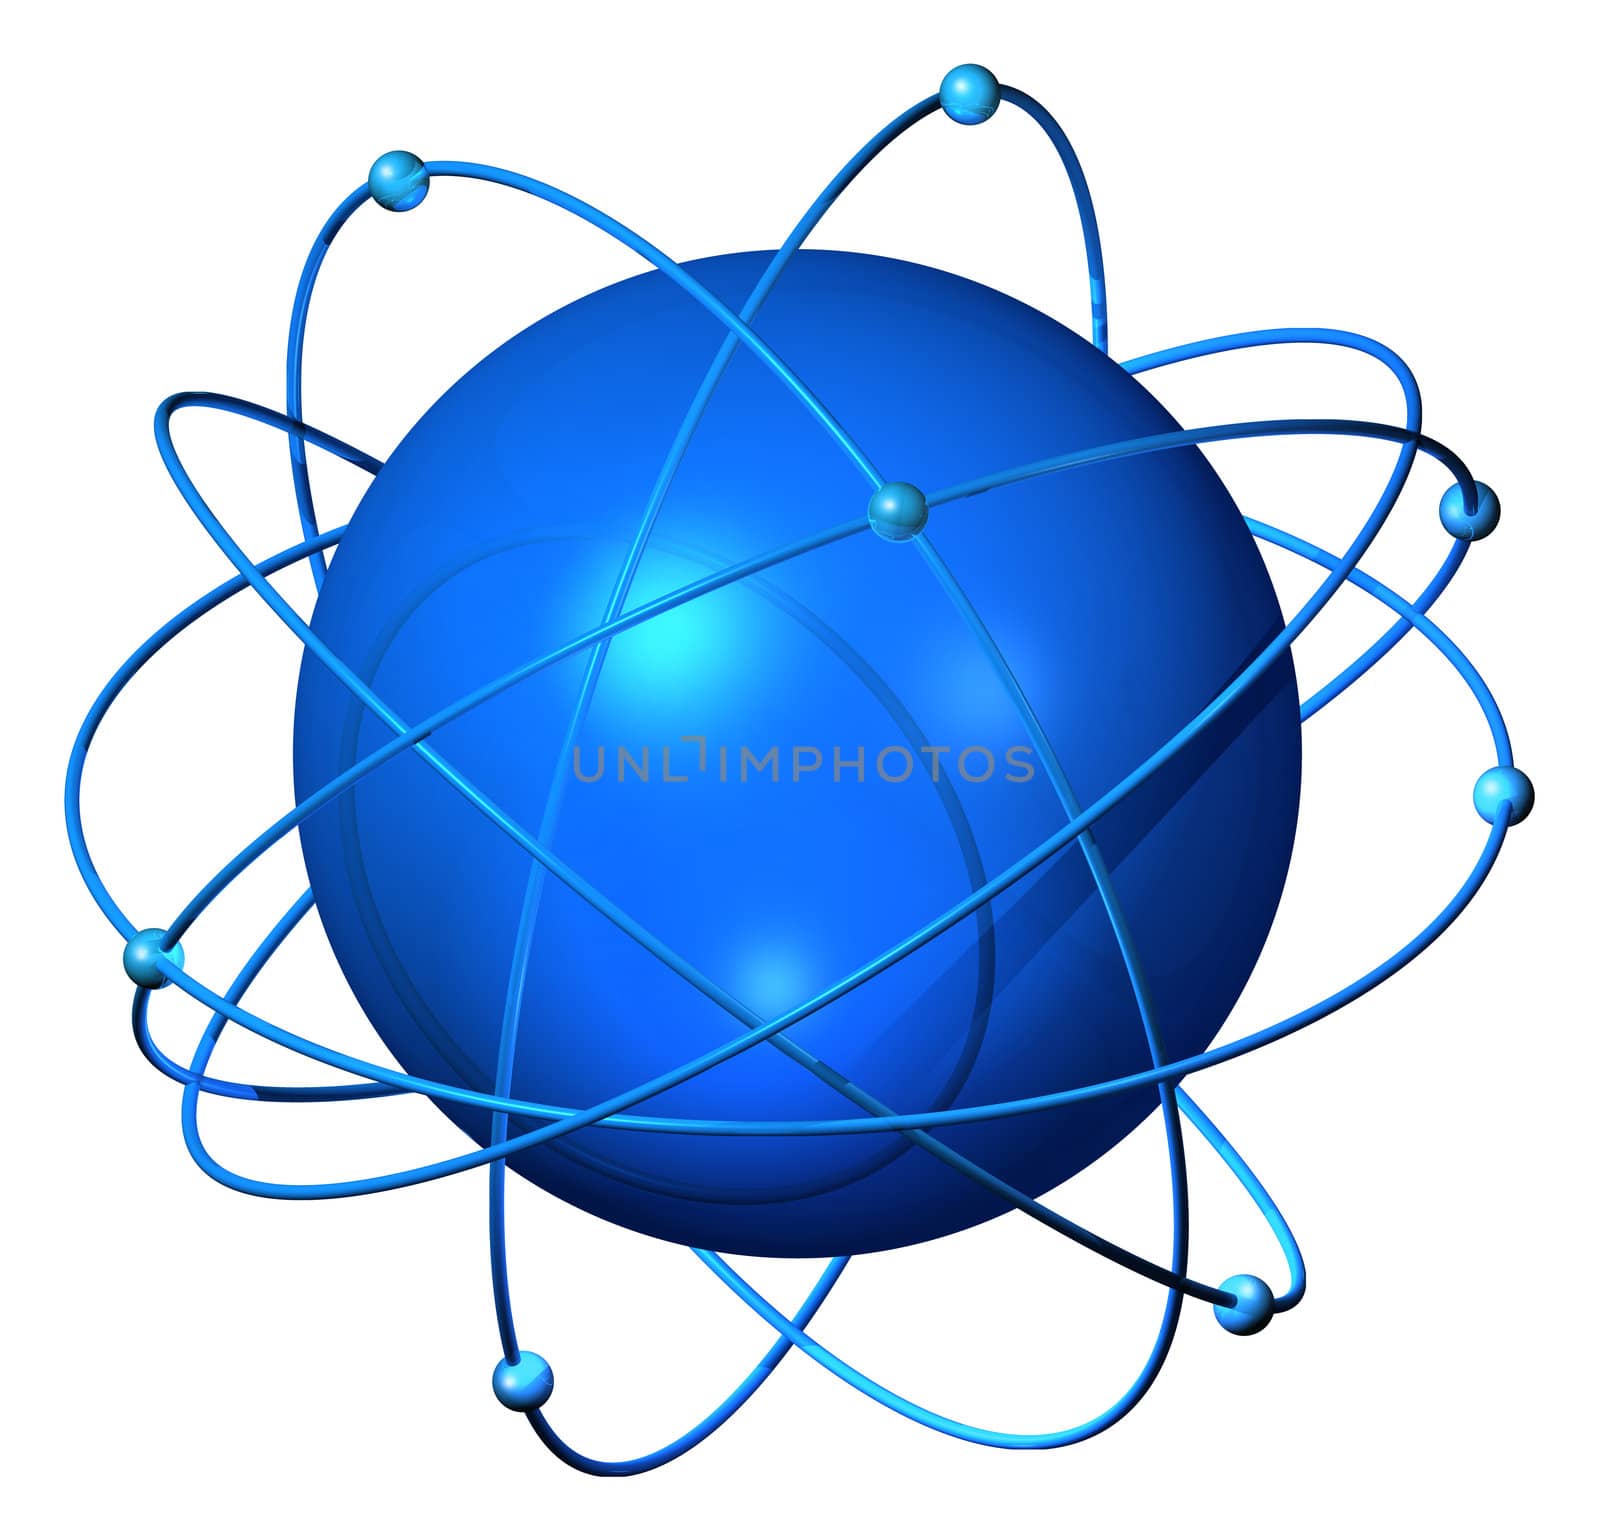 Atomium satellites by anterovium